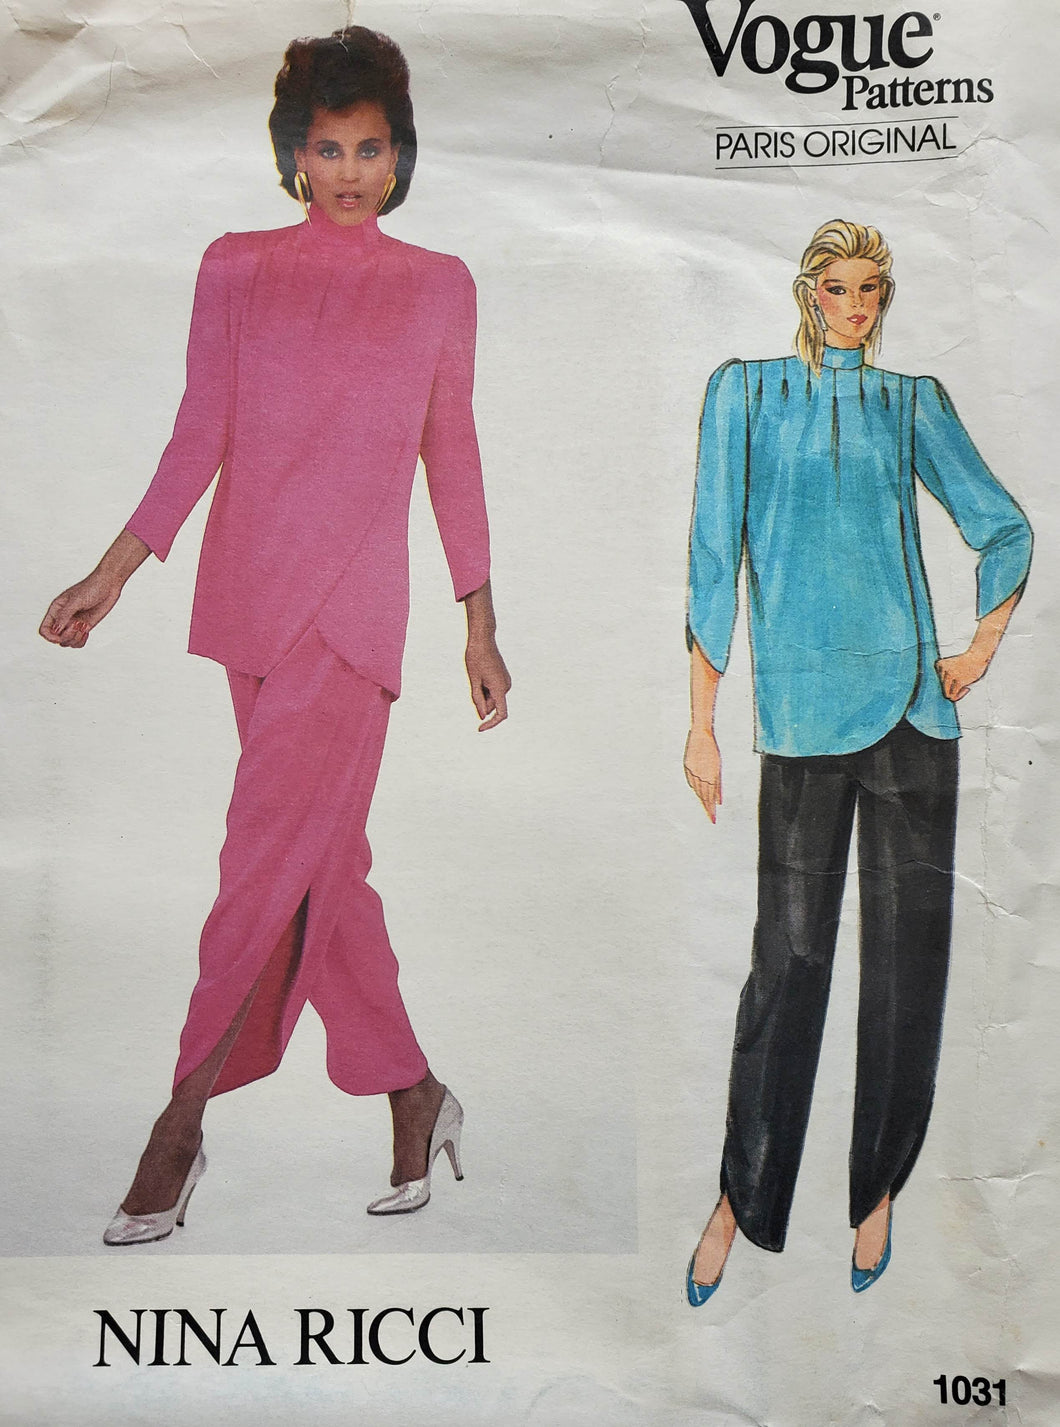 Vogue Pattern 1031, UNCUT, Paris Original Nina Ricci, Misses Pants and Top, Size 8